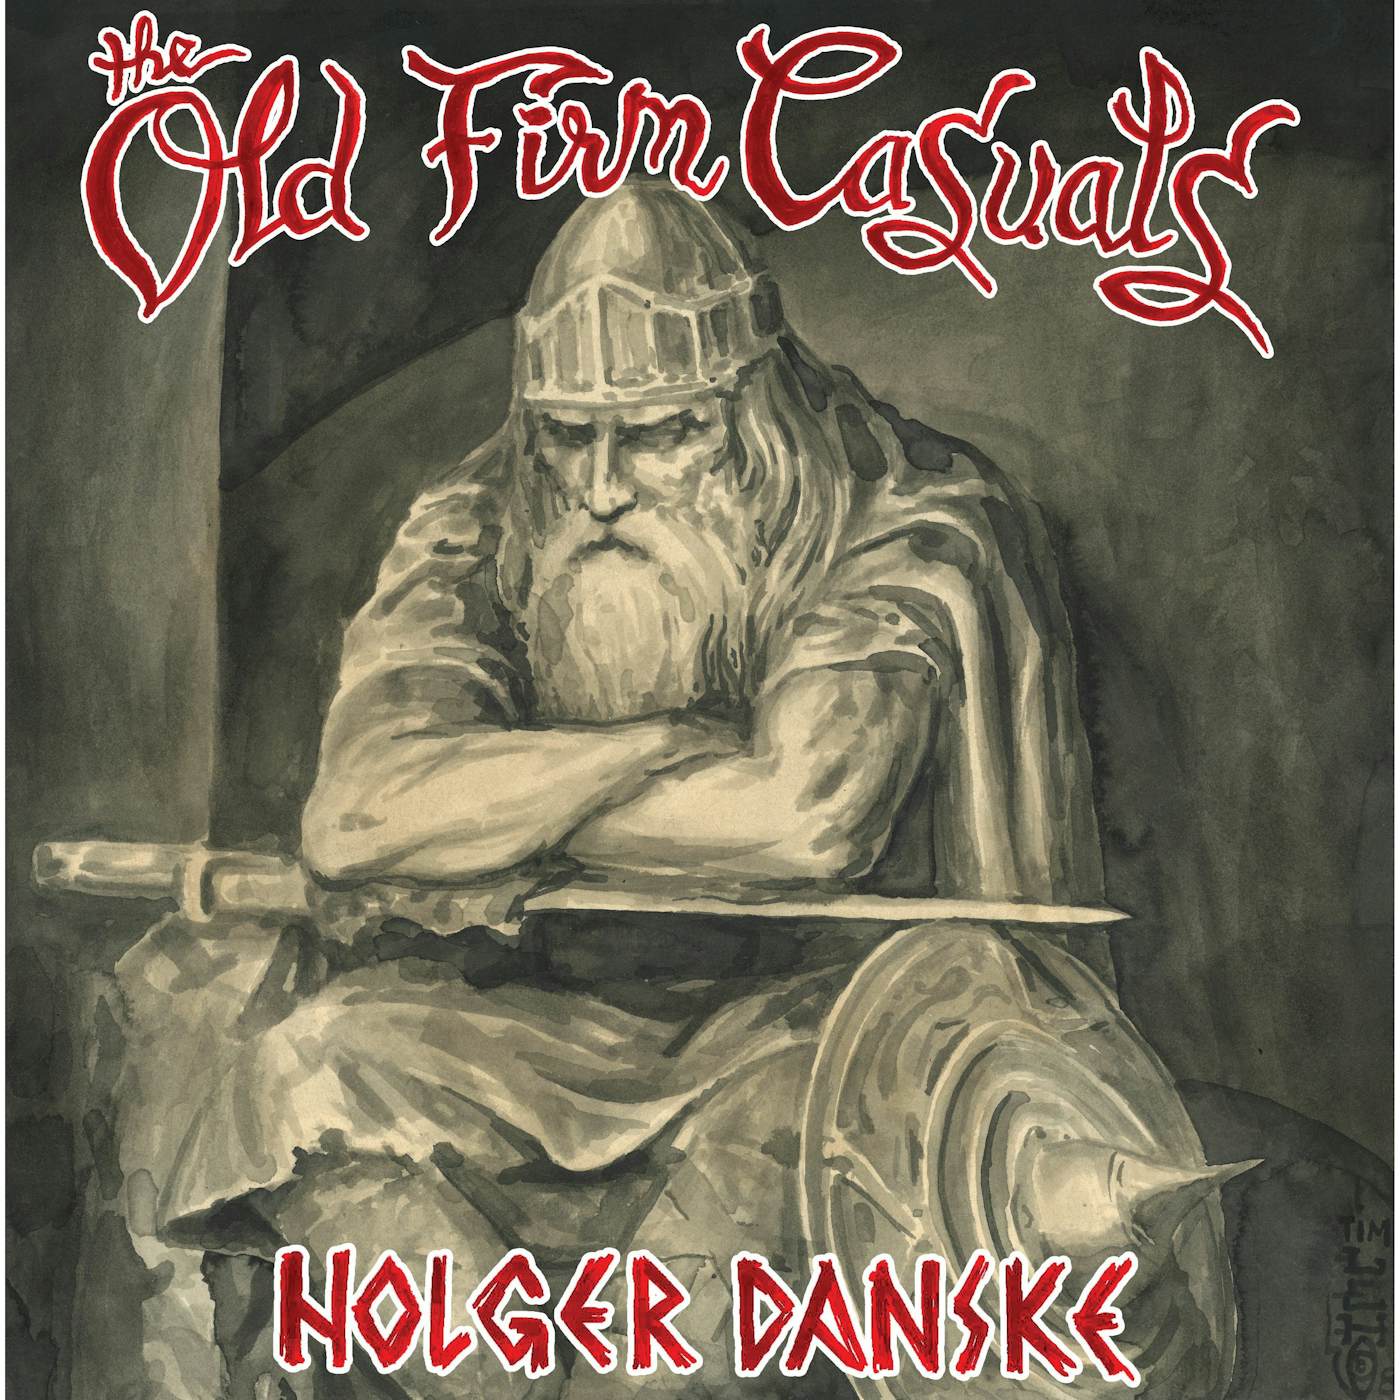 The Old Firm Casuals - Holger Danske LP / CD (Vinyl)